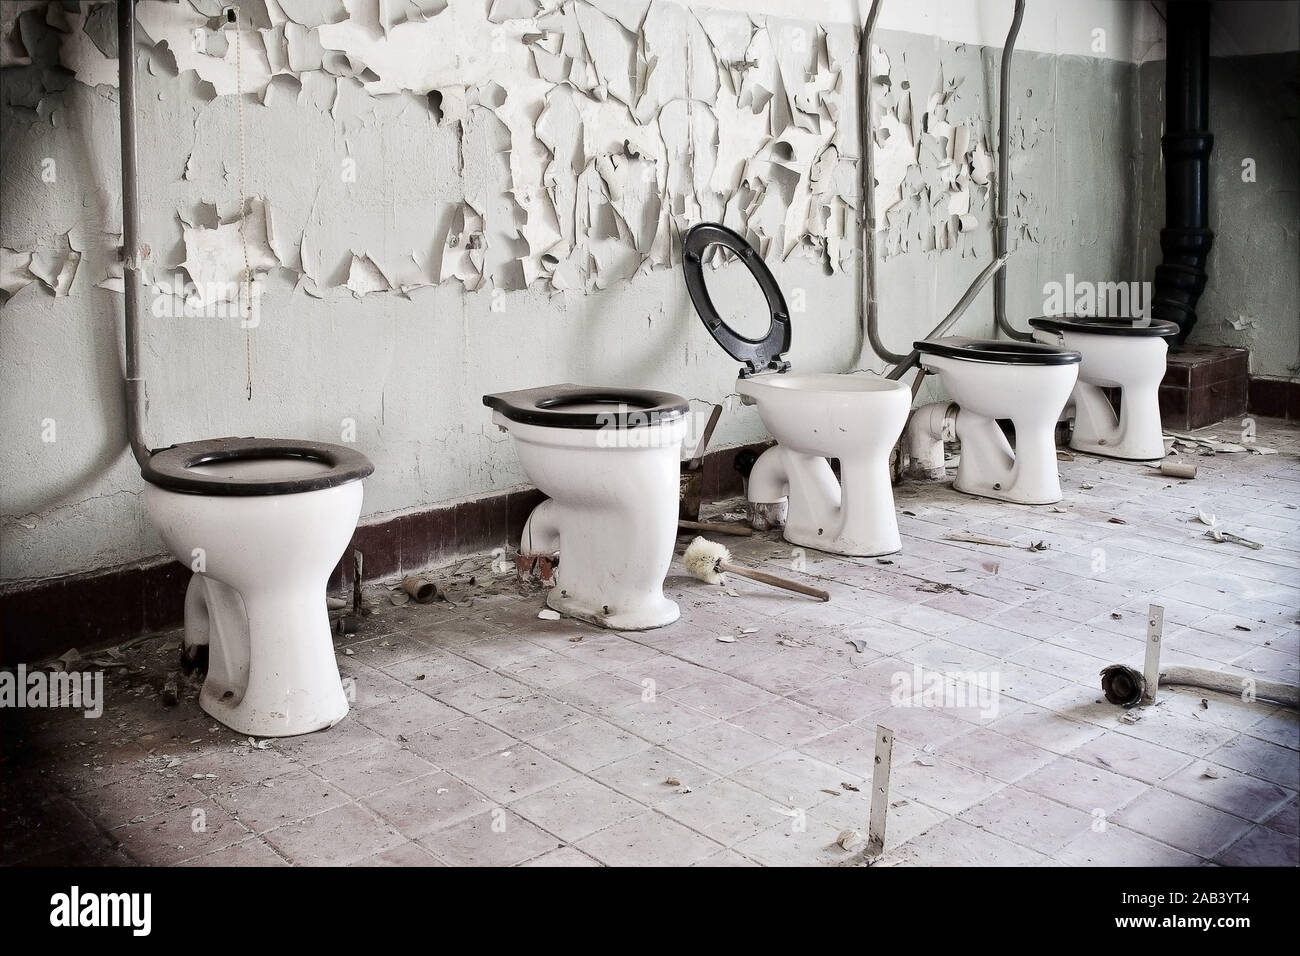 Alte Toilettenbecken in einer Reihe |vecchio tazza igienica in una fila| Foto Stock